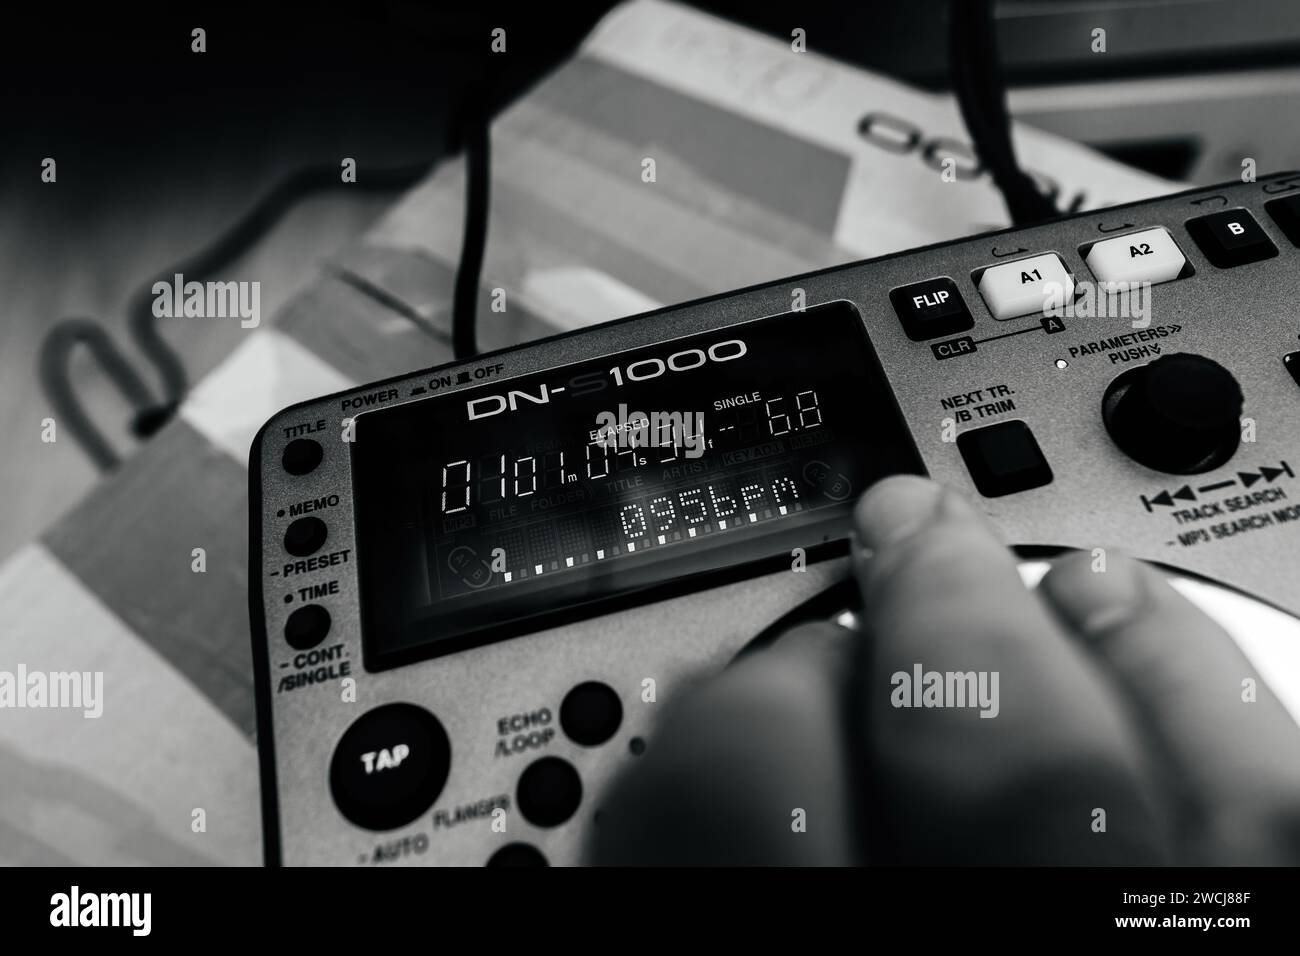 Parigi, Francia - 24 ottobre 2023: Una mano maschile sulla nuova attrezzatura di mixaggio DJ Denon DN-S1000, test a ritmo di 095 BPM dopo l'unboxing, in una scena in bianco e nero Foto Stock